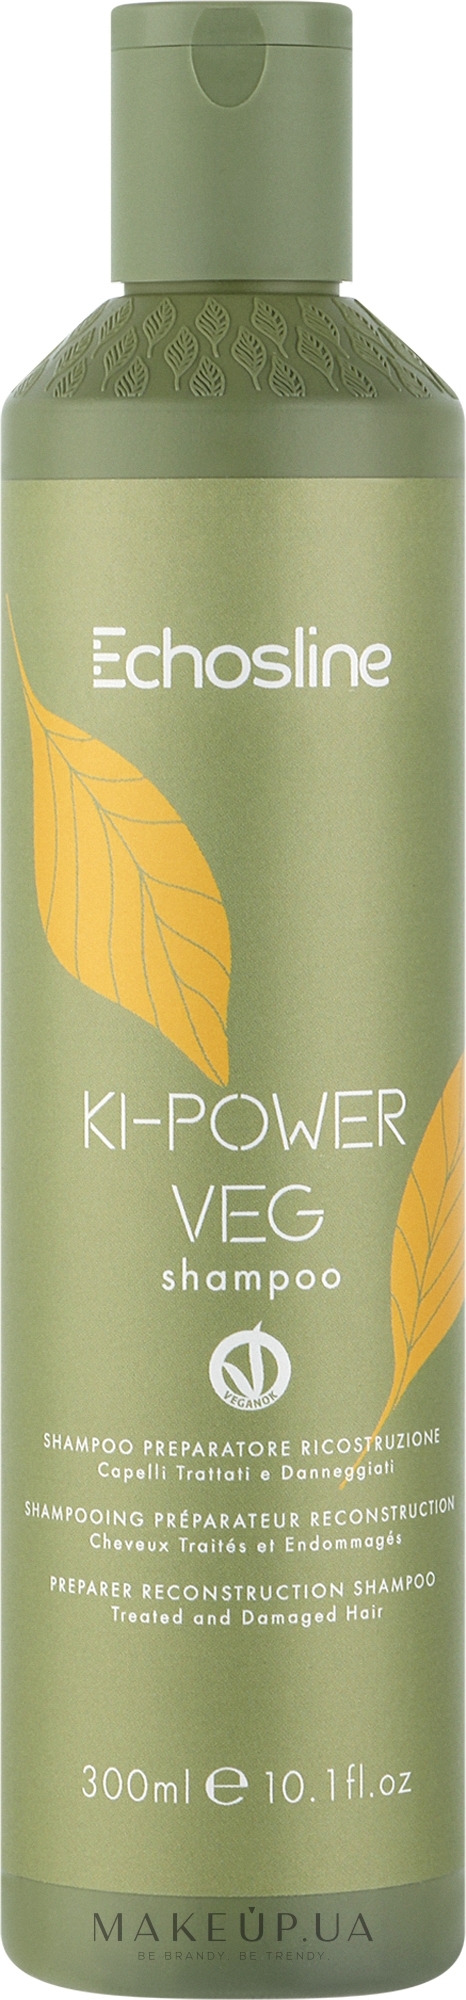 Восстанавливающий шампунь для волос - Echosline Ki-Power Veg Shampoo — фото 300ml